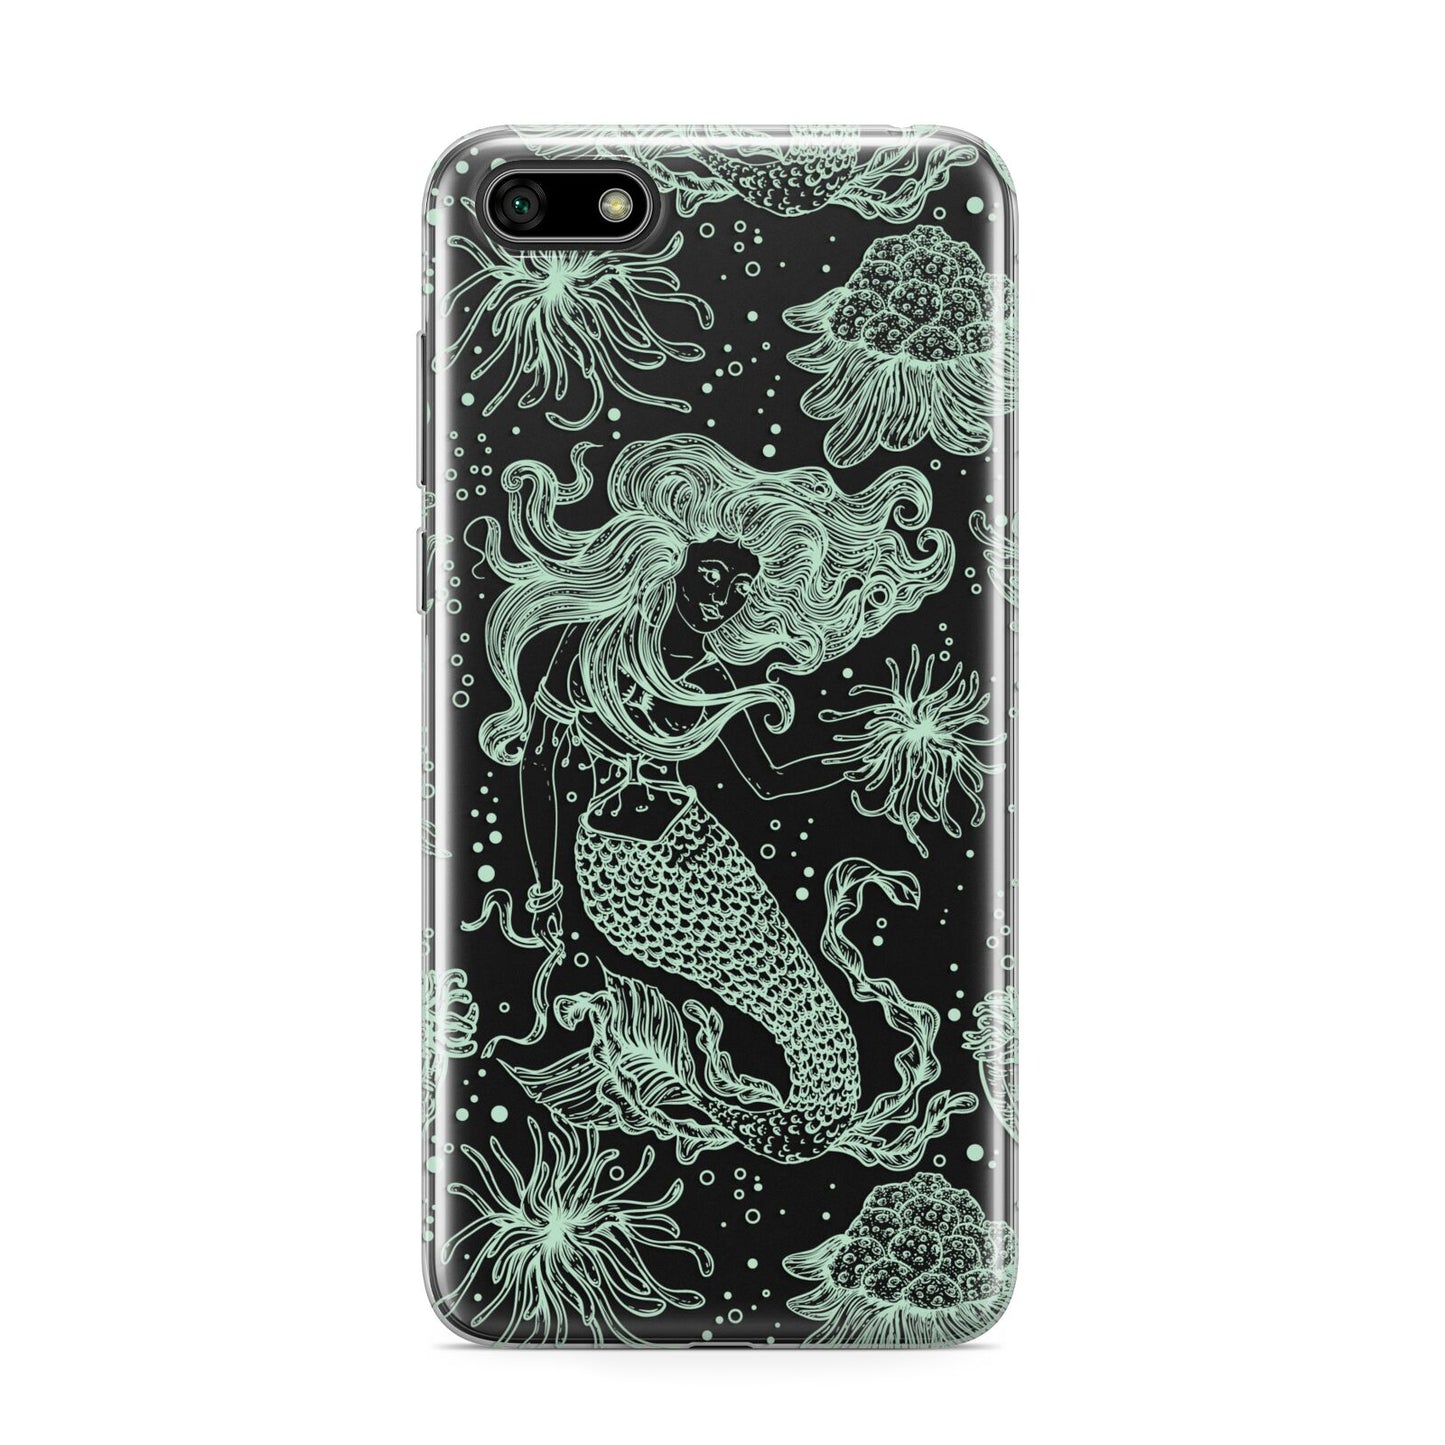 Sea Mermaid Huawei Y5 Prime 2018 Phone Case